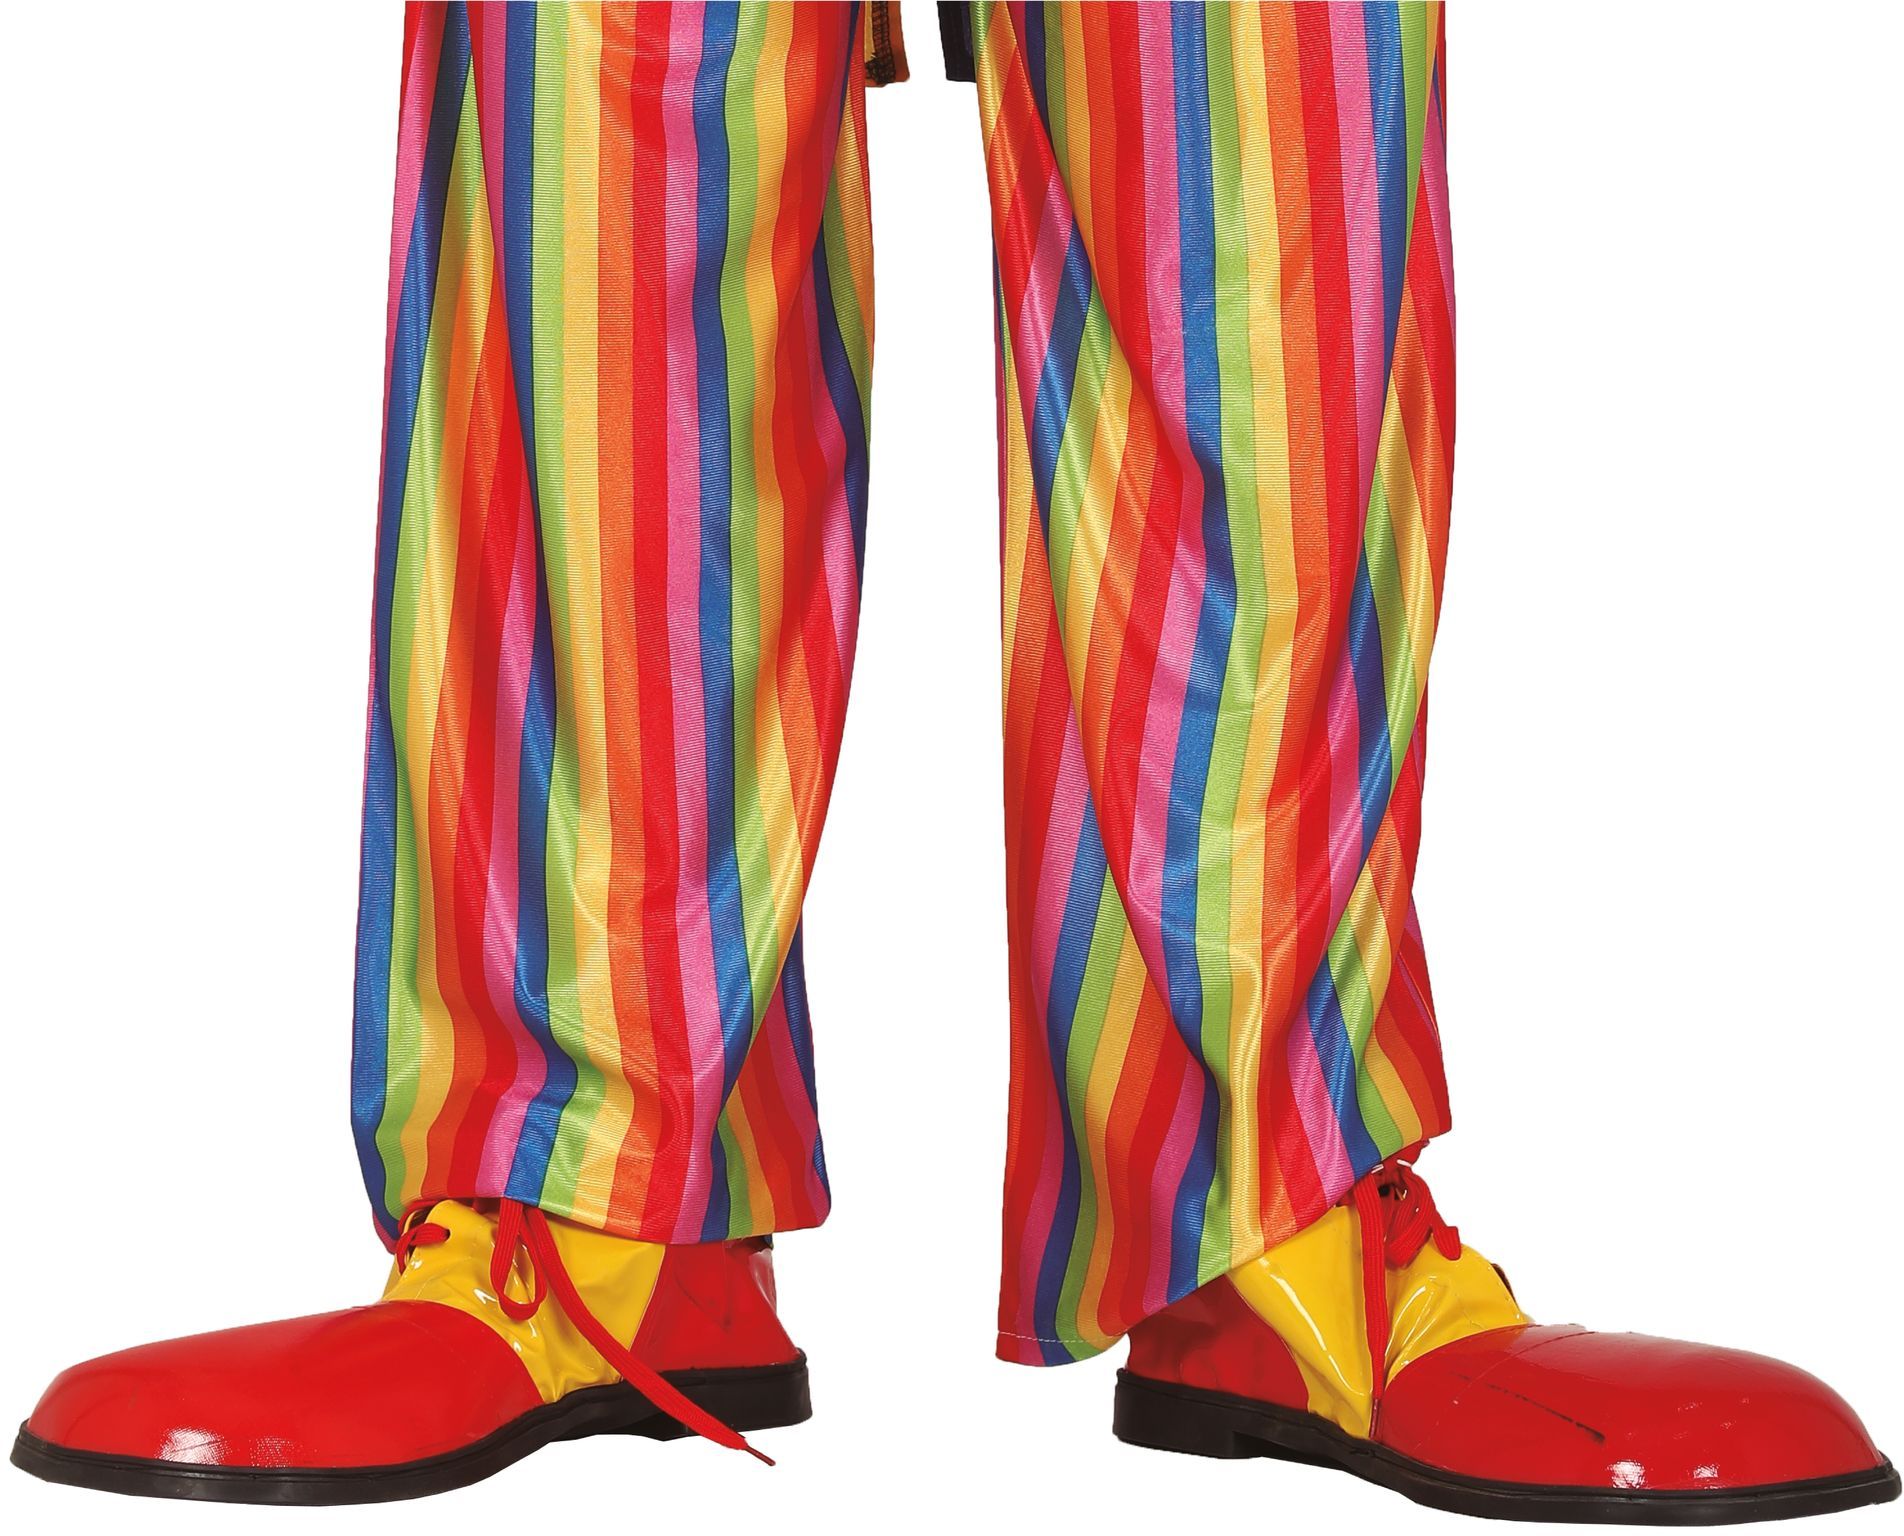 XXL clown schoenen